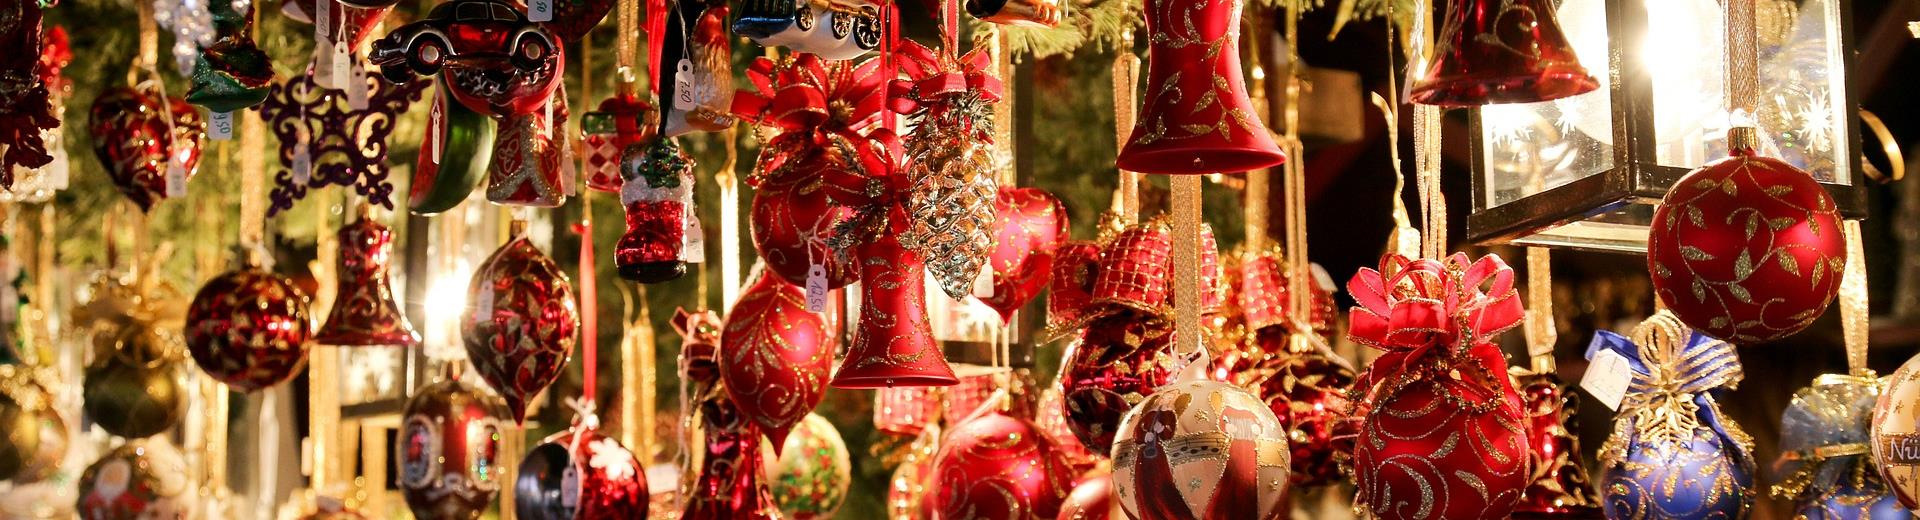 Advantage Plus Discount Hotel Monza e Brianza Palace to participate in Christmas markets